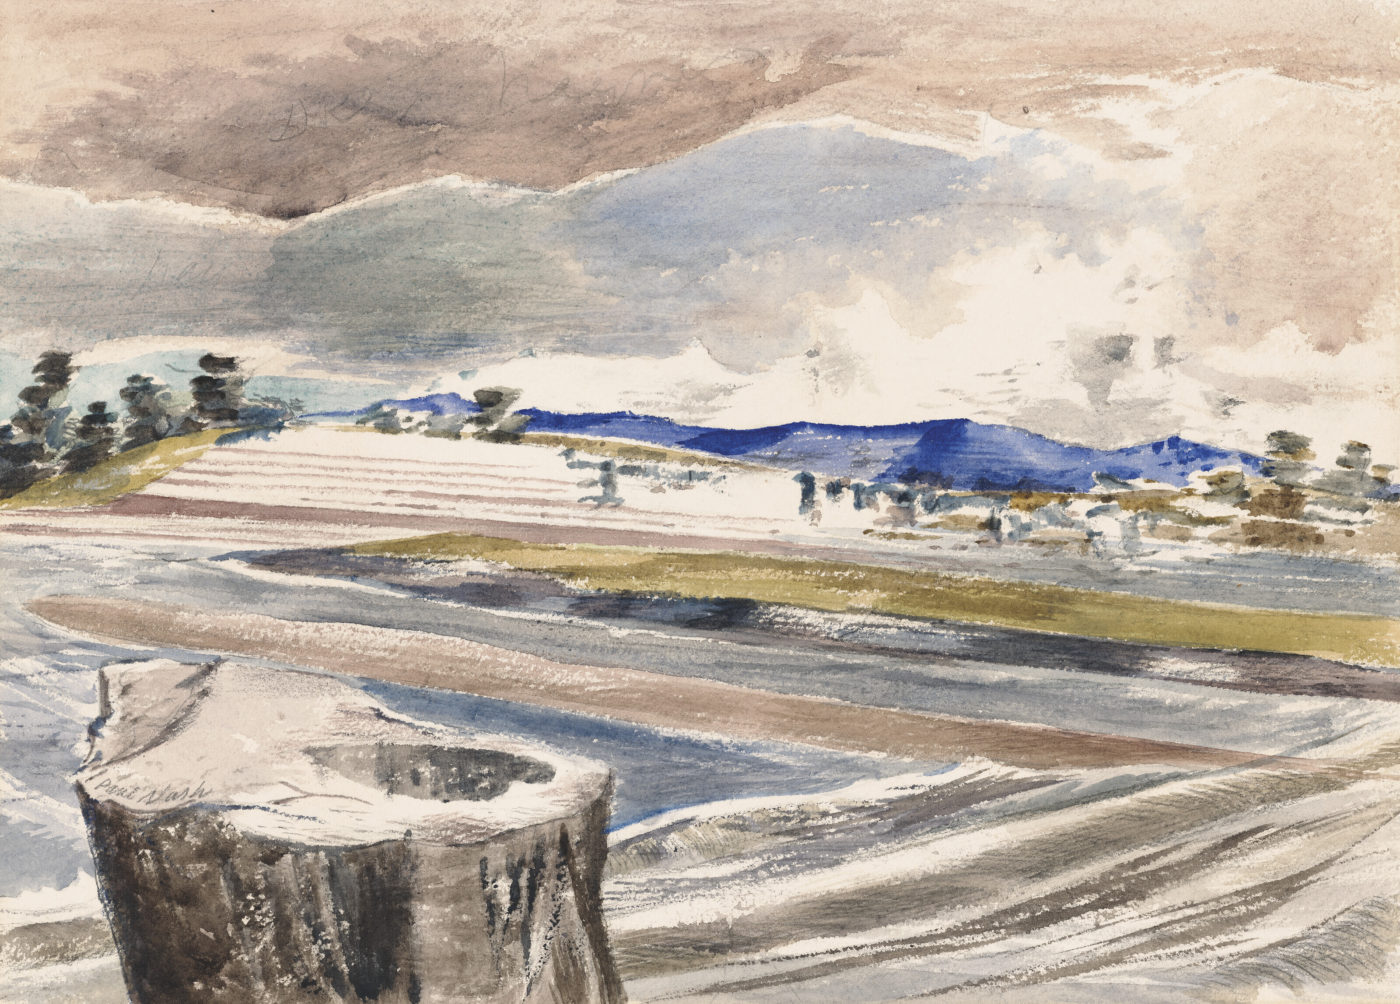 Paul Nash (1889-1946), Severn Bore, Pimlico Sands